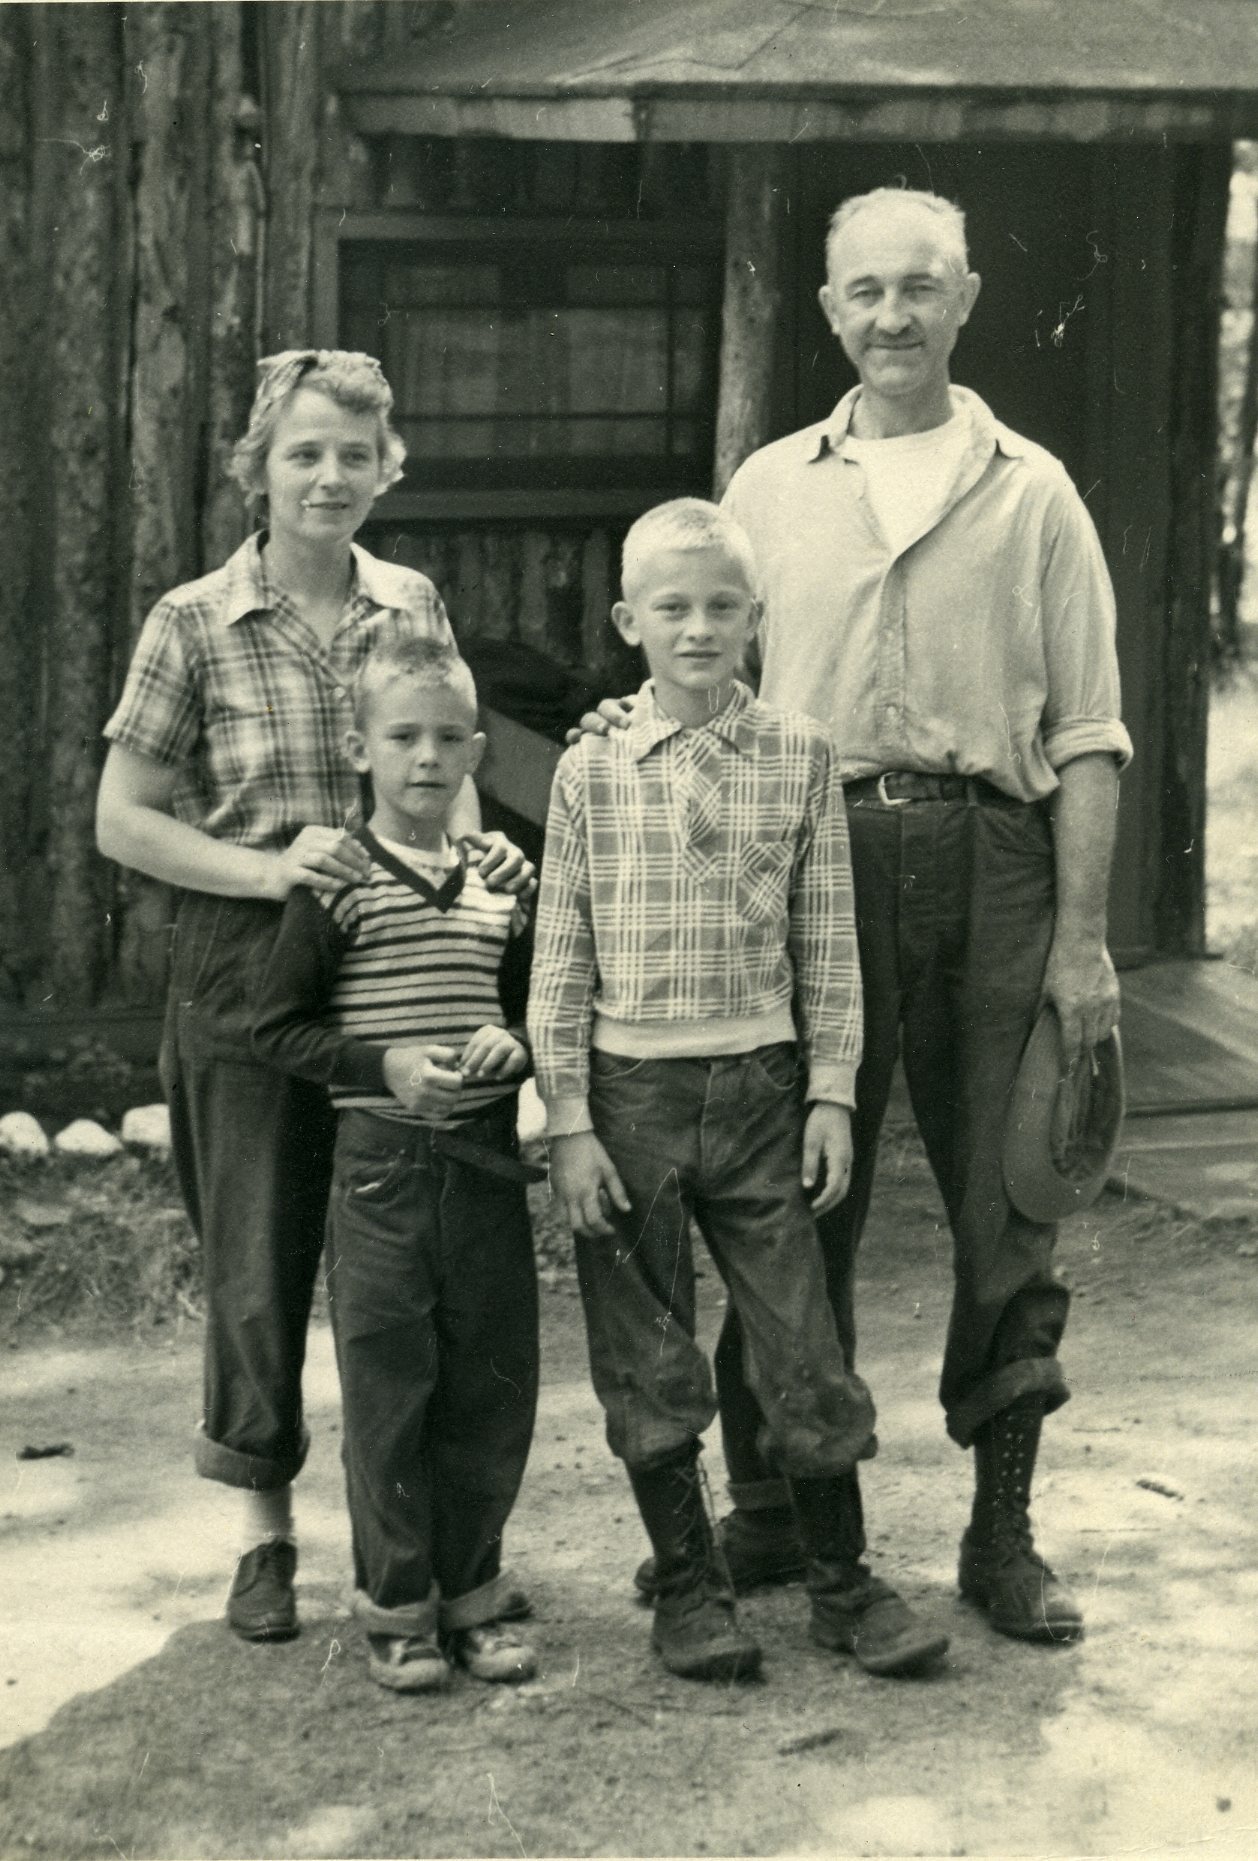 1950 family photo